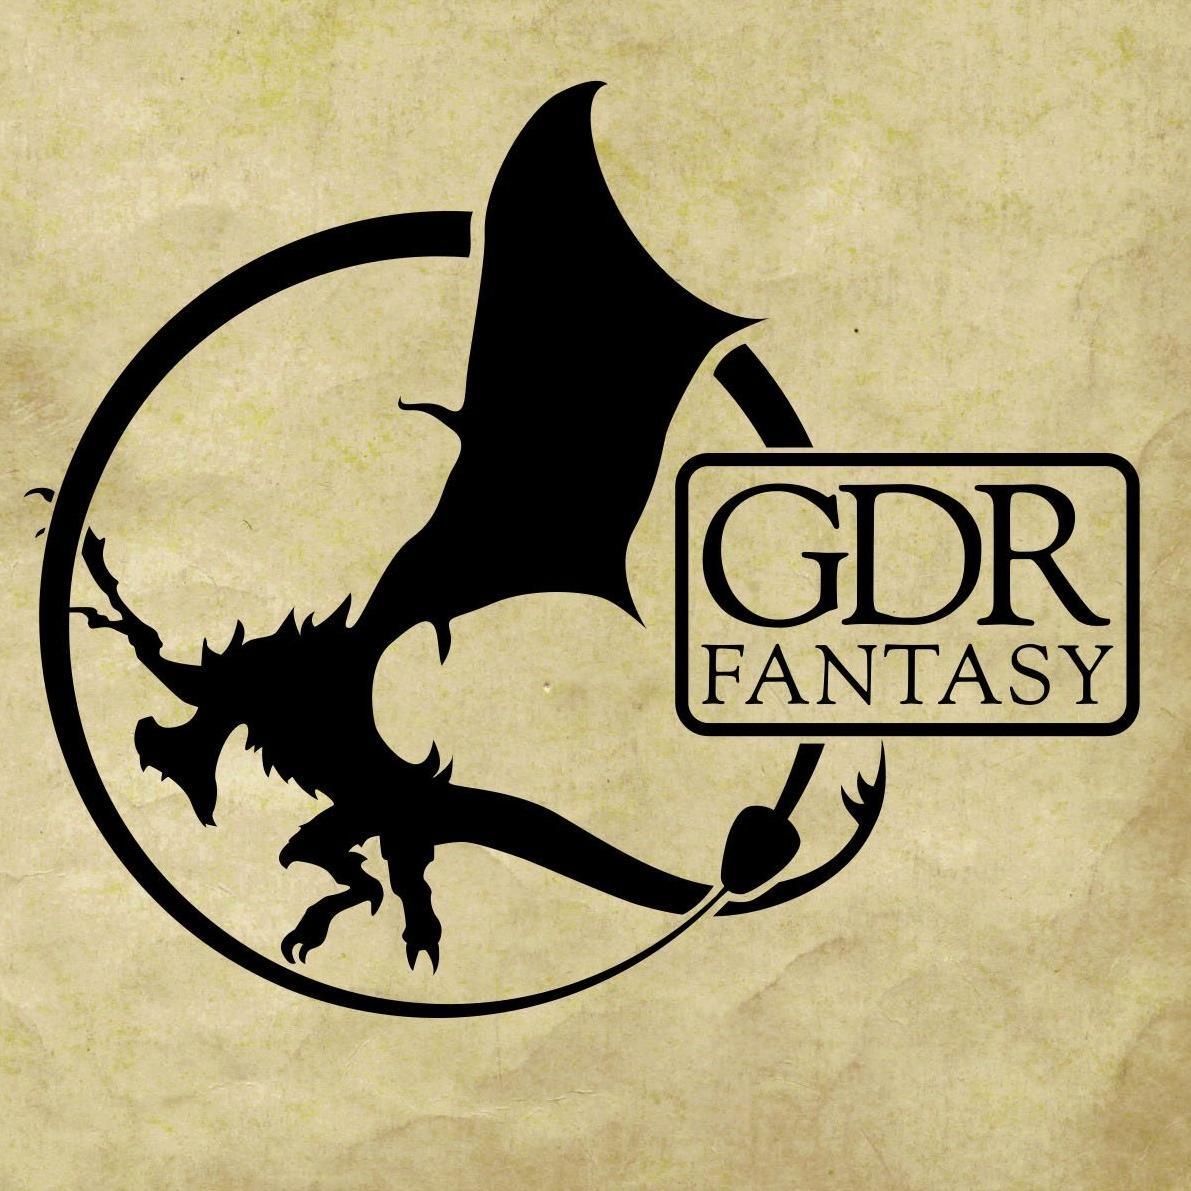 Maggiori informazioni riguardo "GdR Fantasy"